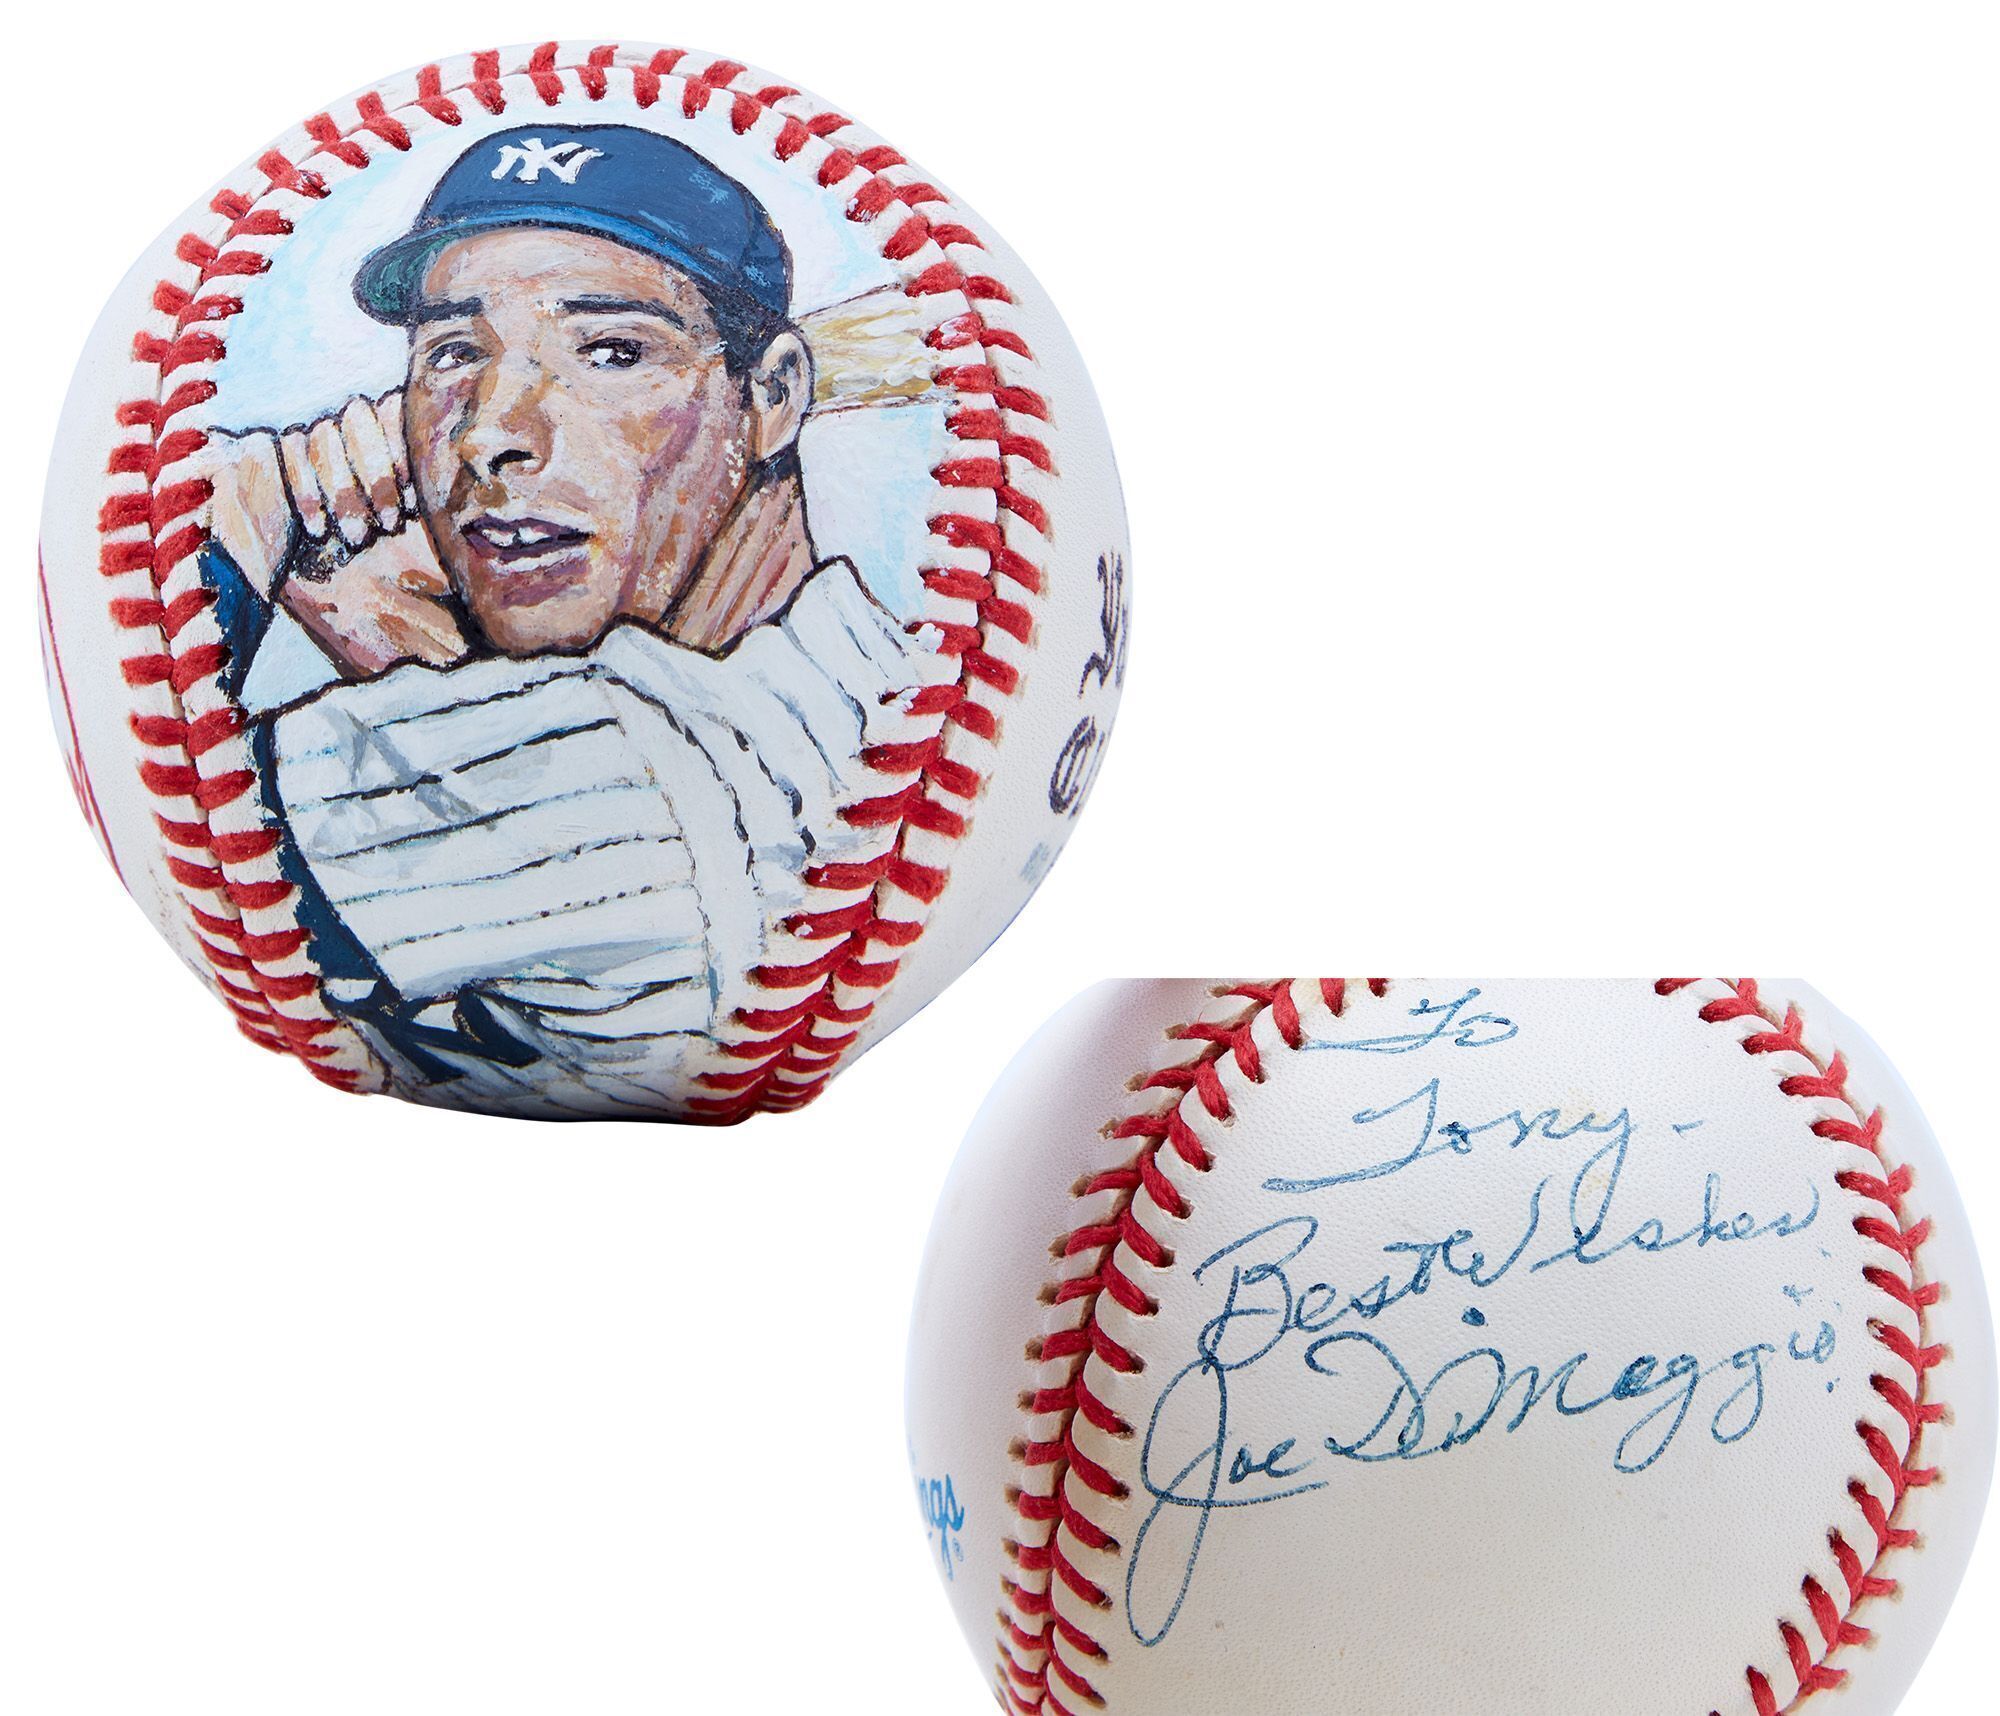 Joe DiMaggio signed baseball for Tony Bennett